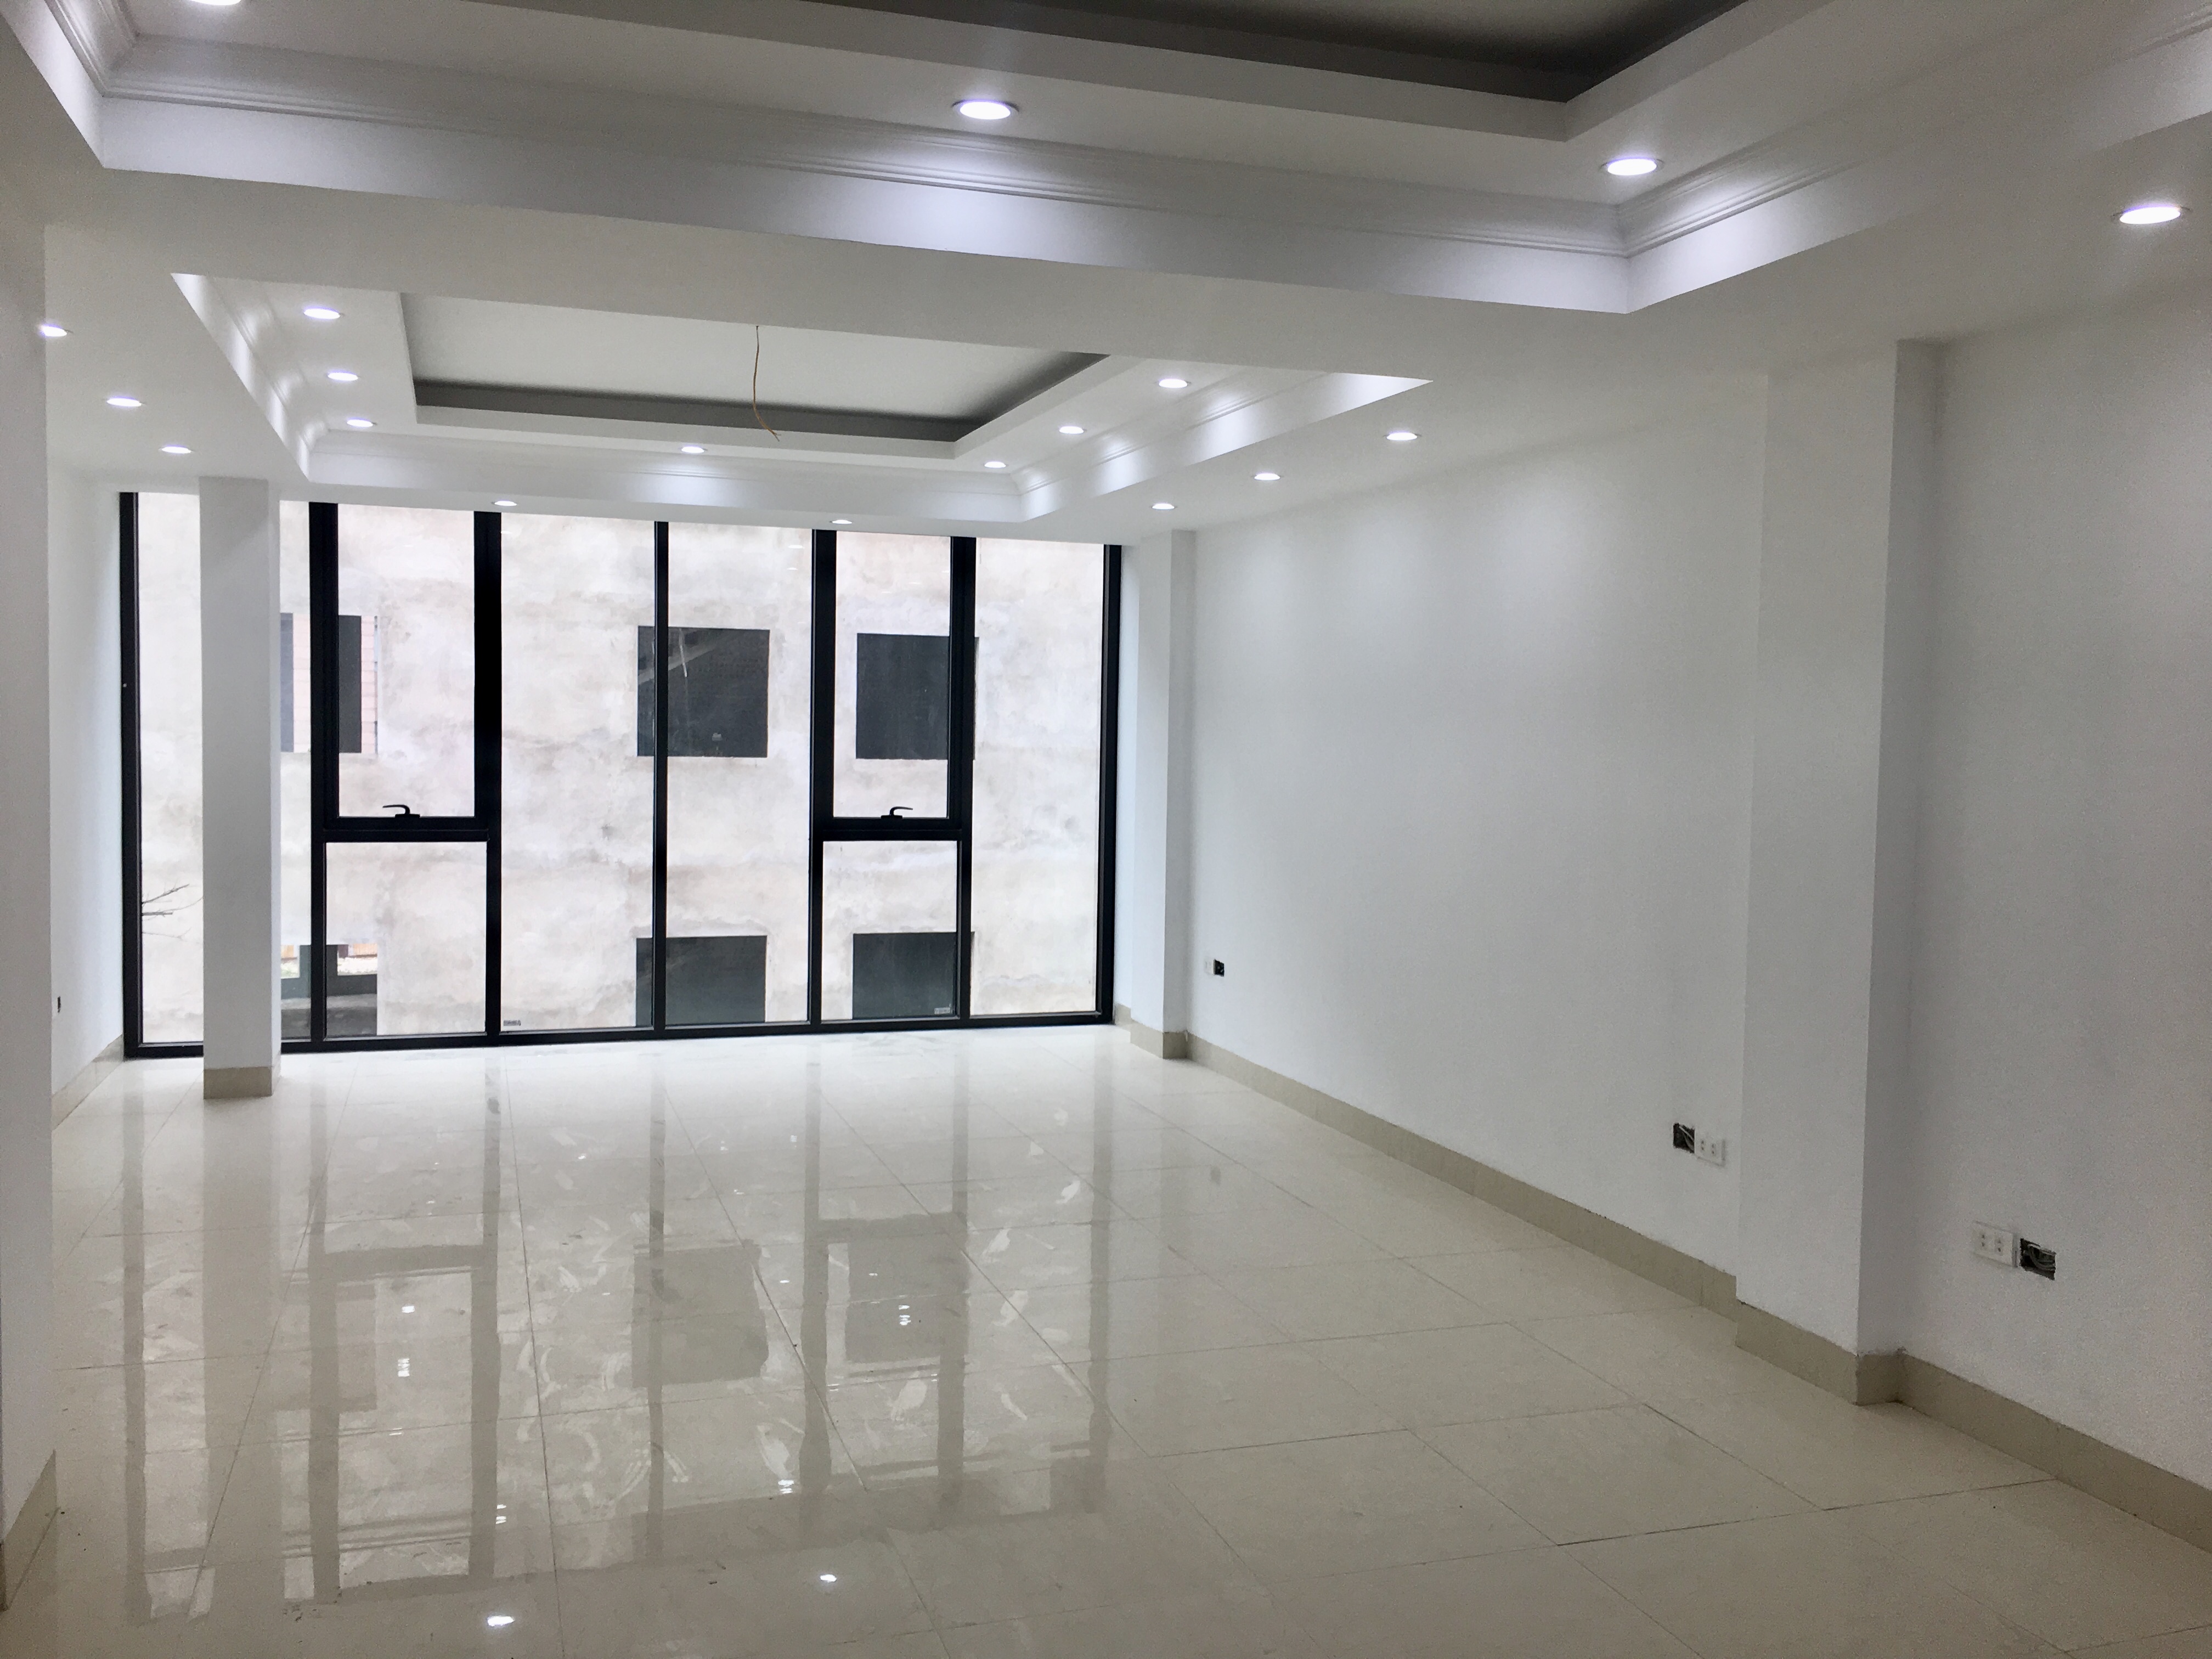 Văn phòng cho thuê làm trung tâm anh ngữ, Spa, show room tại phố Nguyễn Khang, quận Cầu Giấy